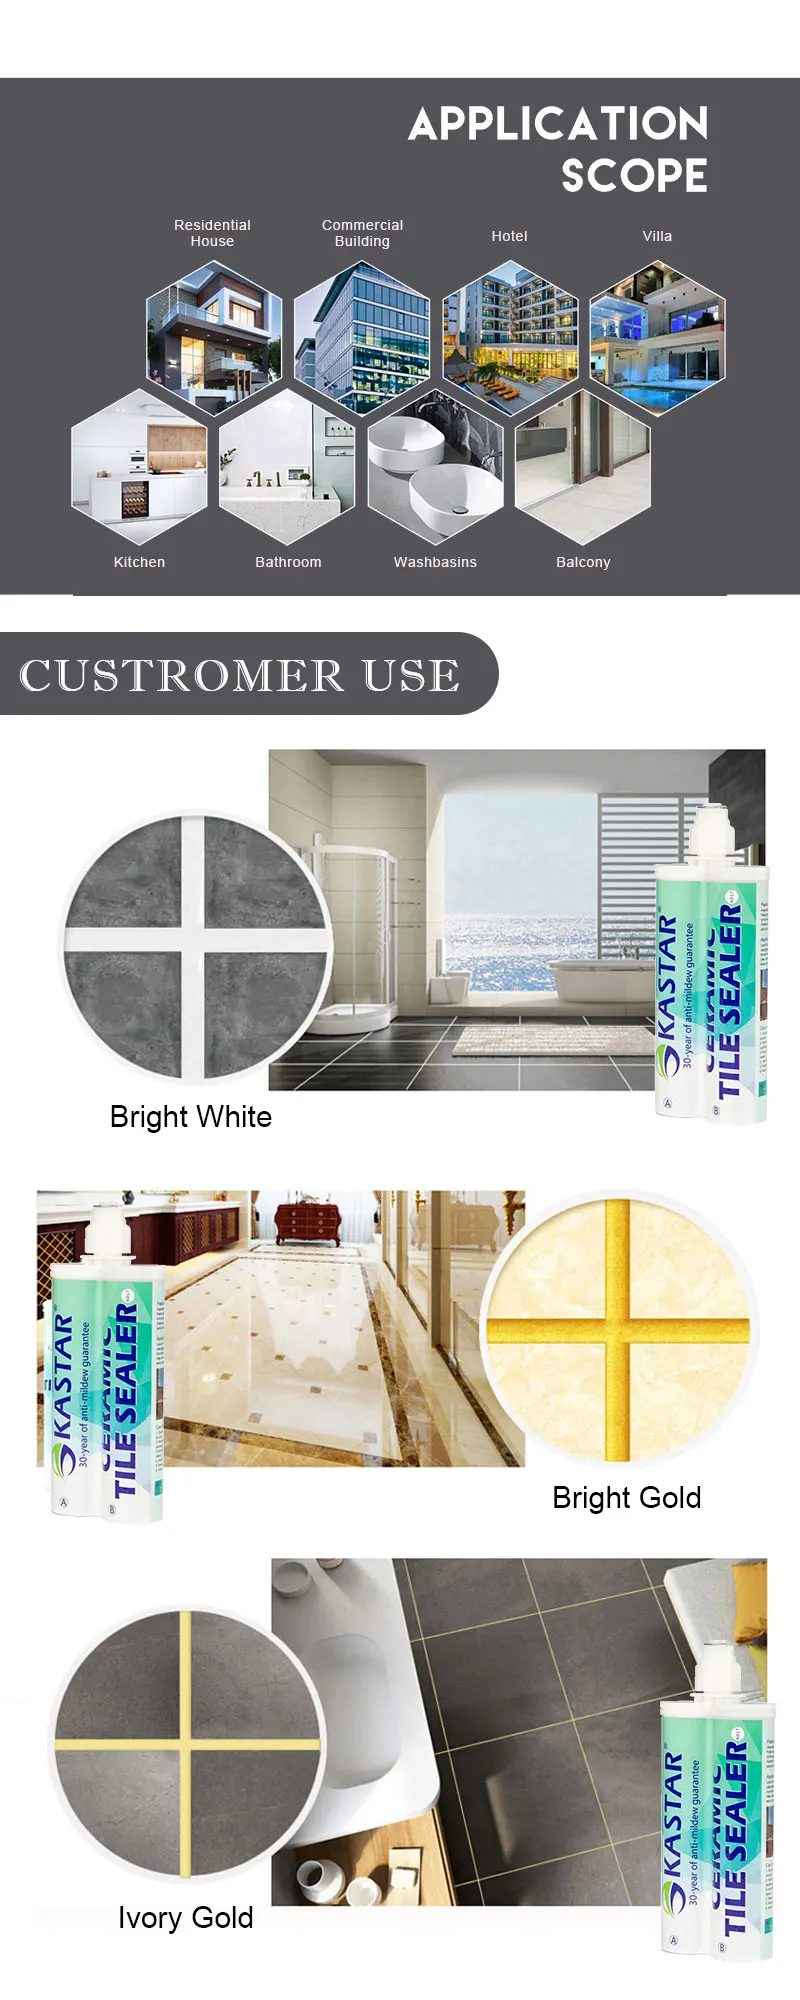 China Factory Supplier Bathroom Floor Gap Filler Ceramic Epoxy Tile Grout Sealer For Sale